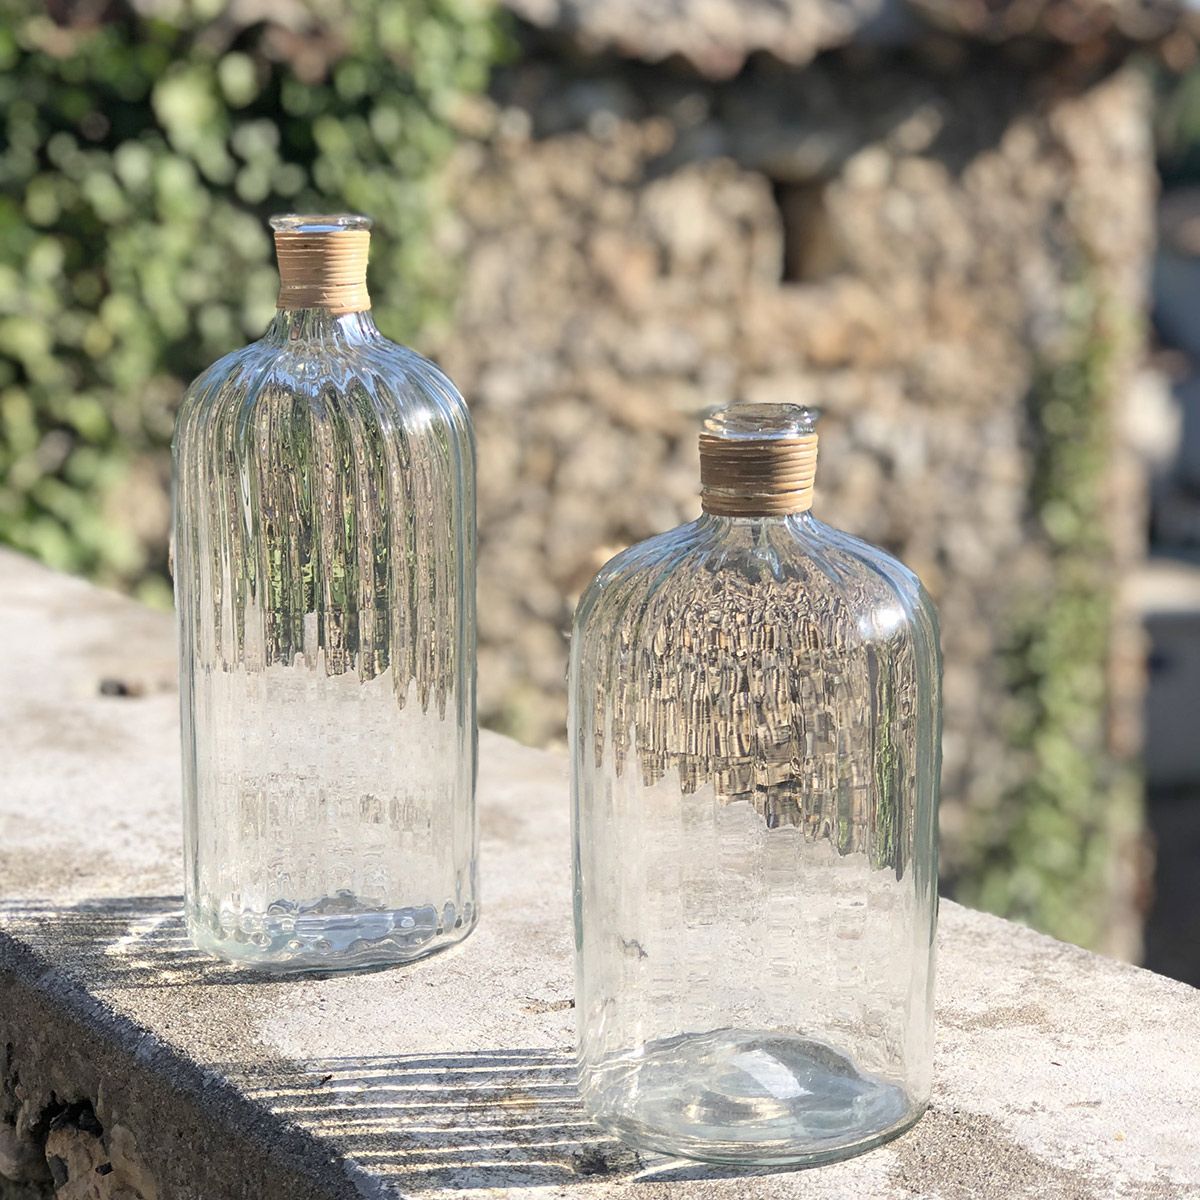 Bonbonne en verre dépoli forme bouteille 31 x 18 cm Soline – Decoclico